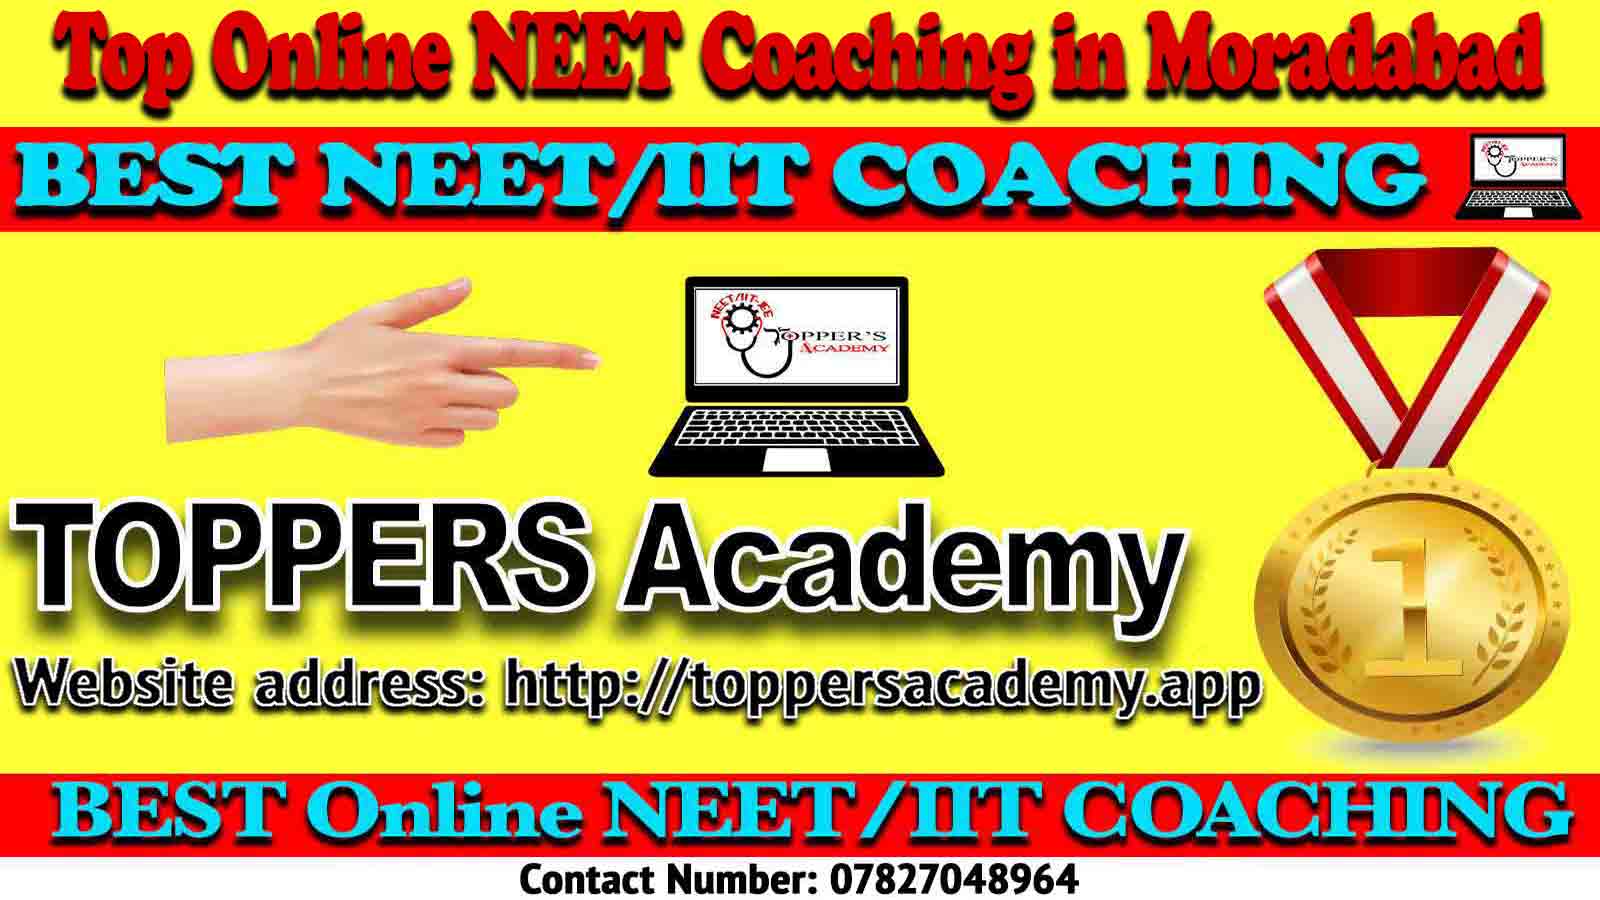 Best Online NEET Coaching in Moradabad